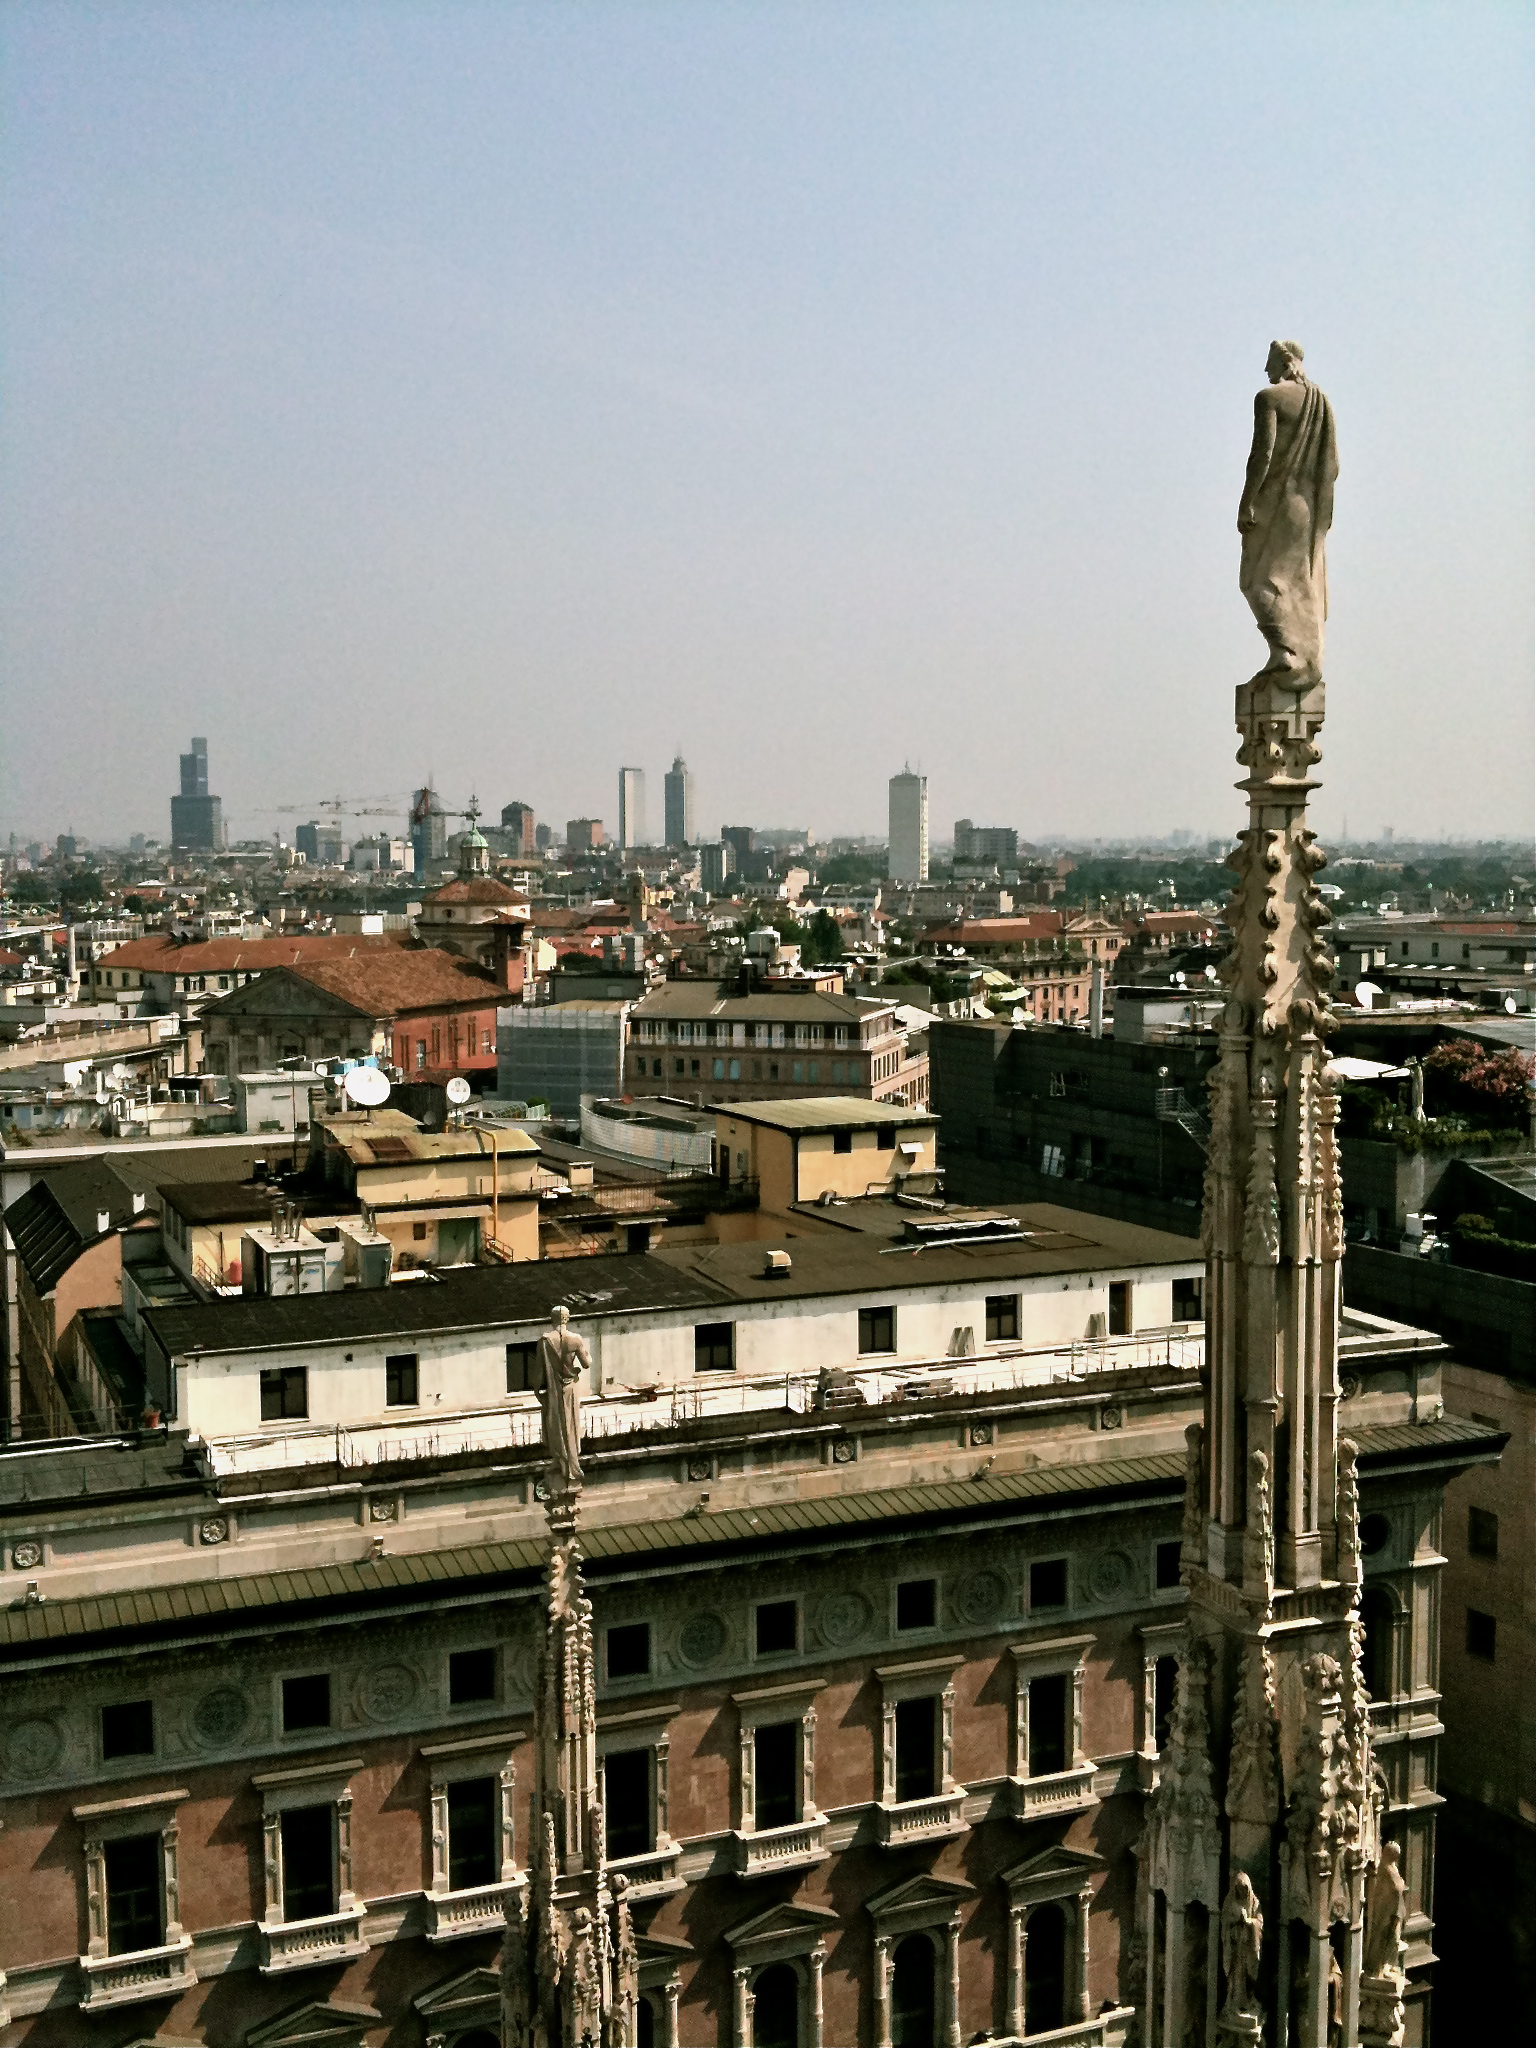 Petit tour sur le toit de la cathédrale - Duomo